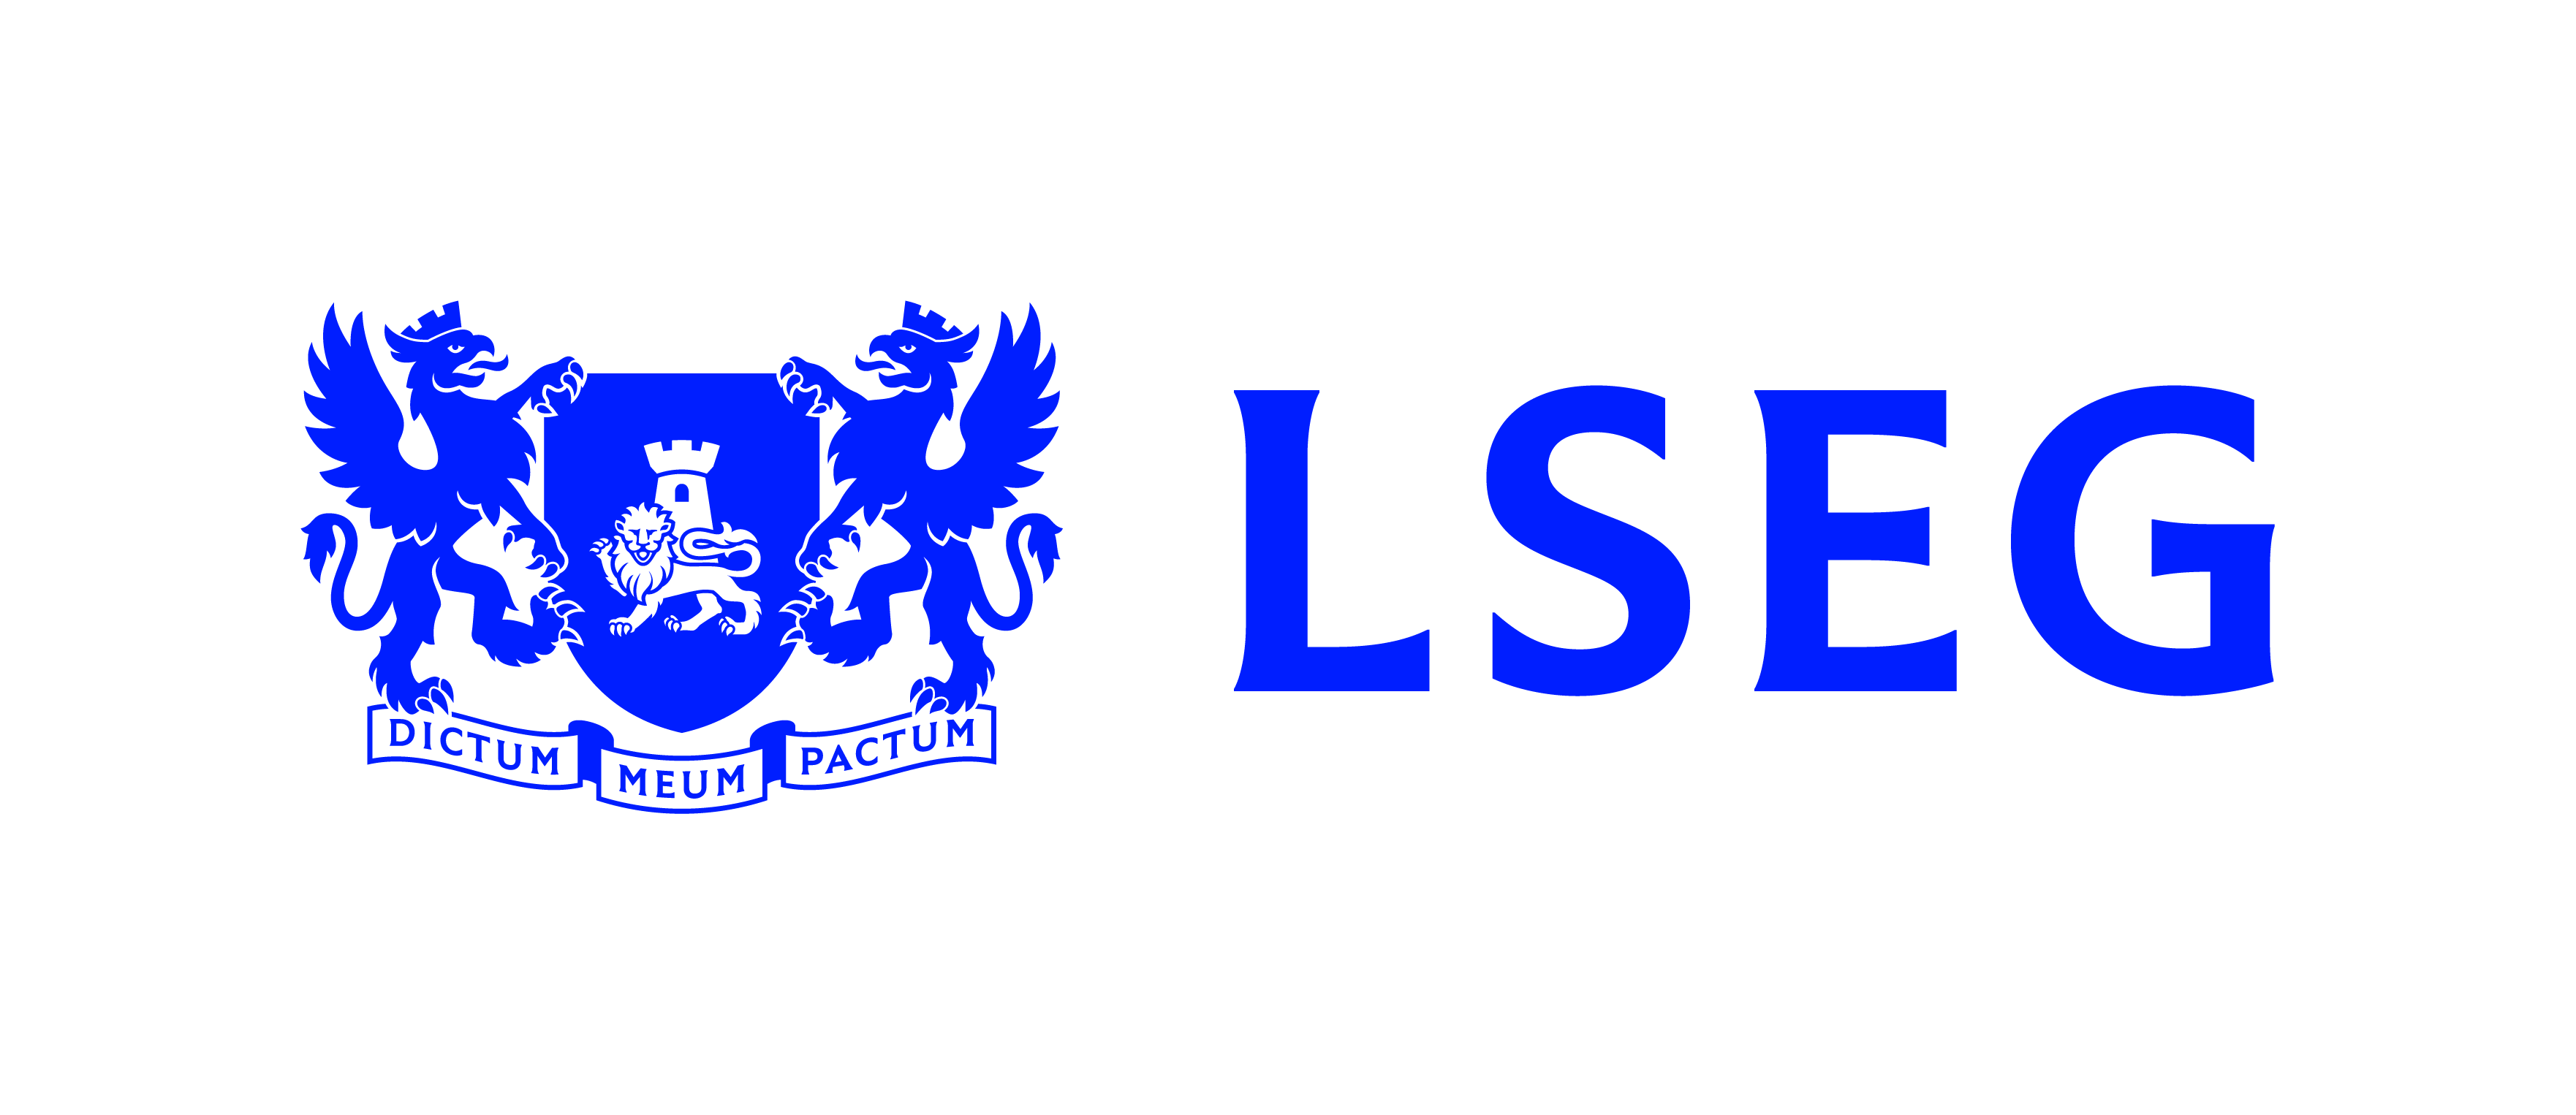 LSEG primary logo